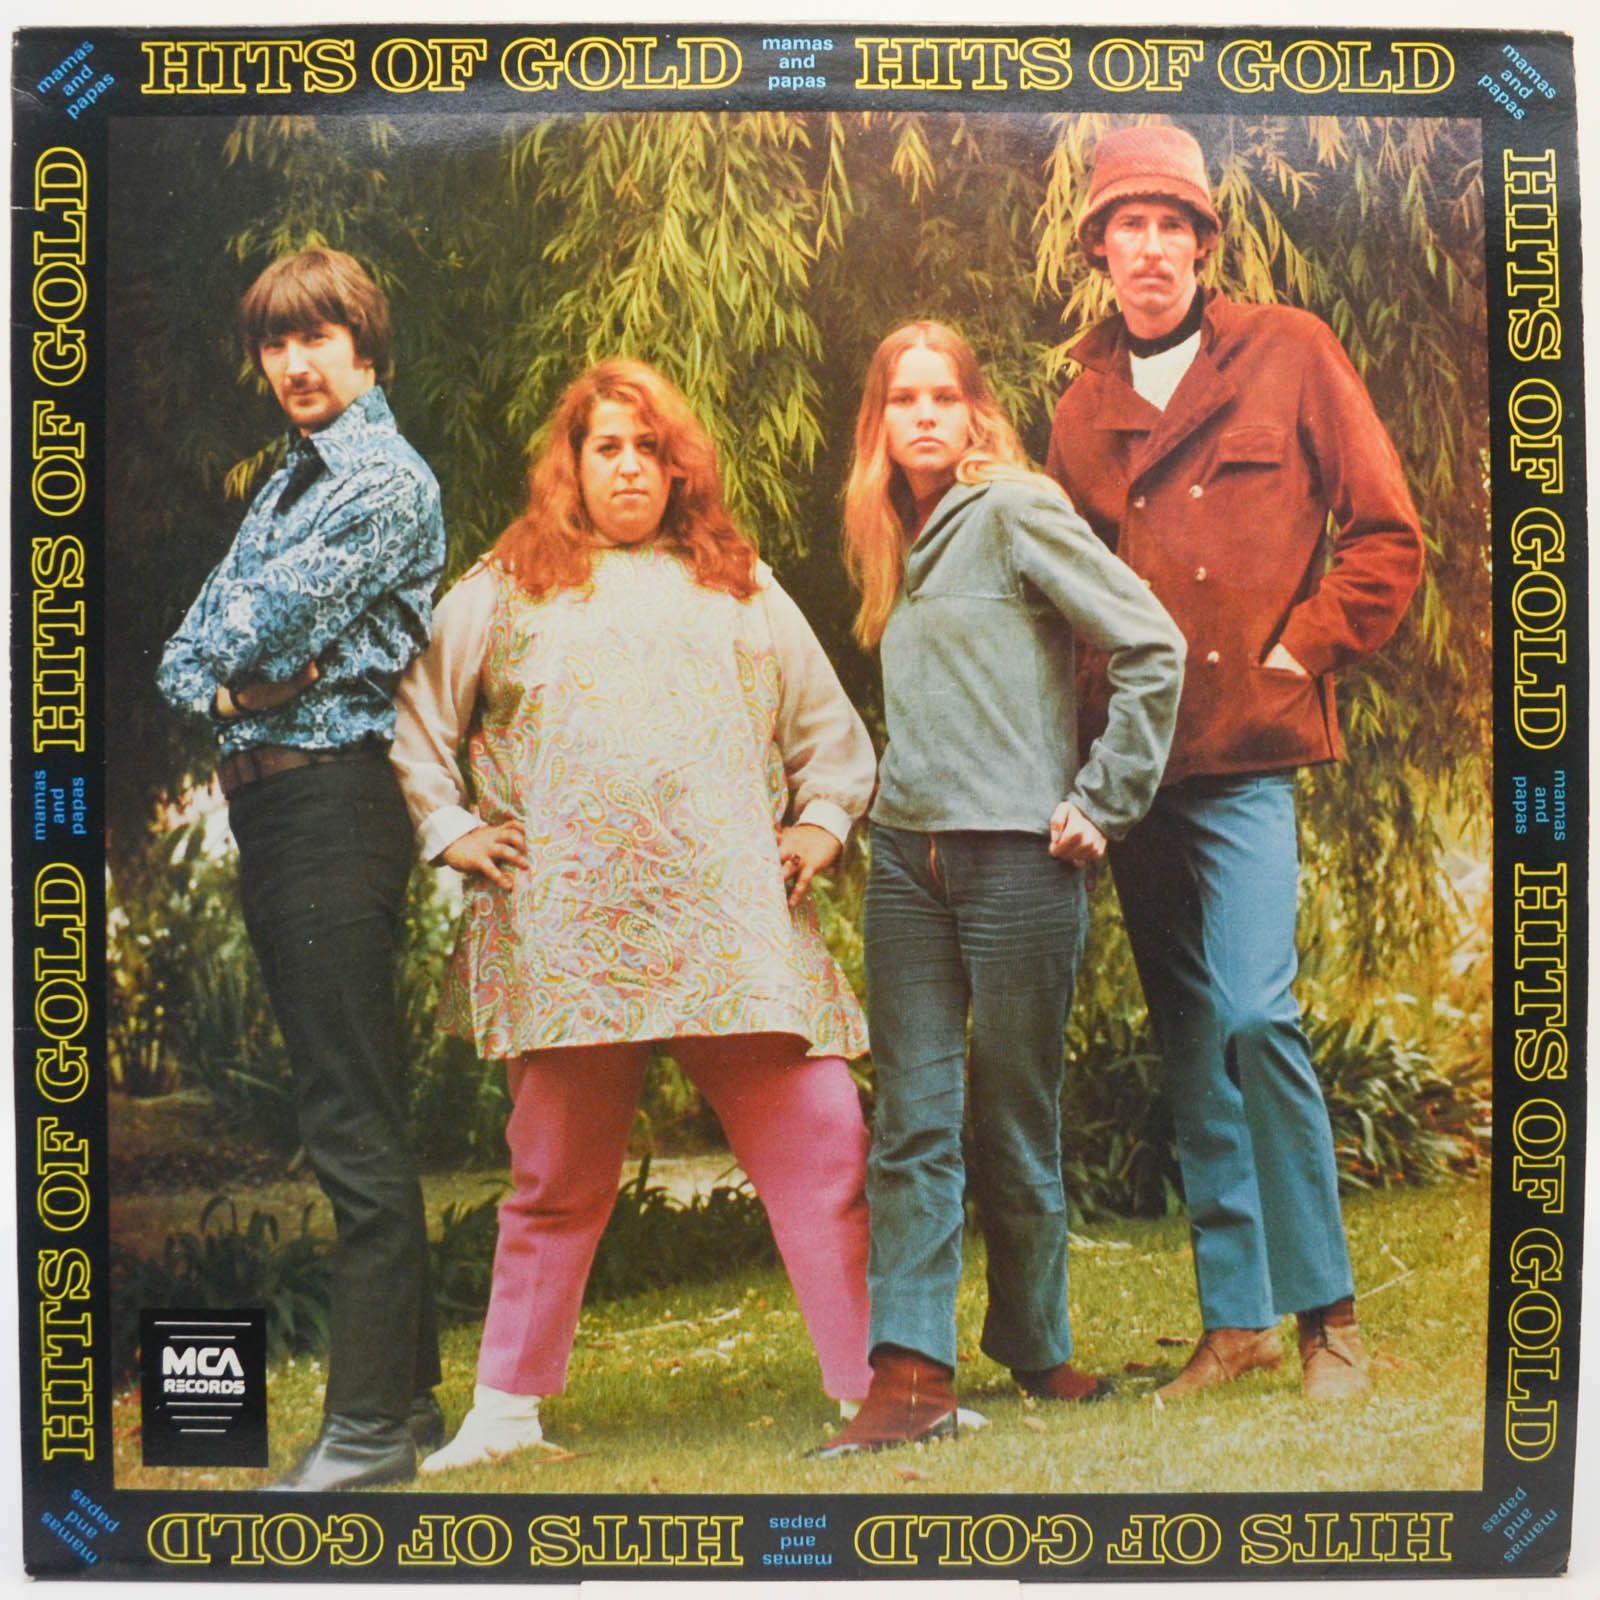 Mamas & The Papas — Hits Of Gold (UK), 1968